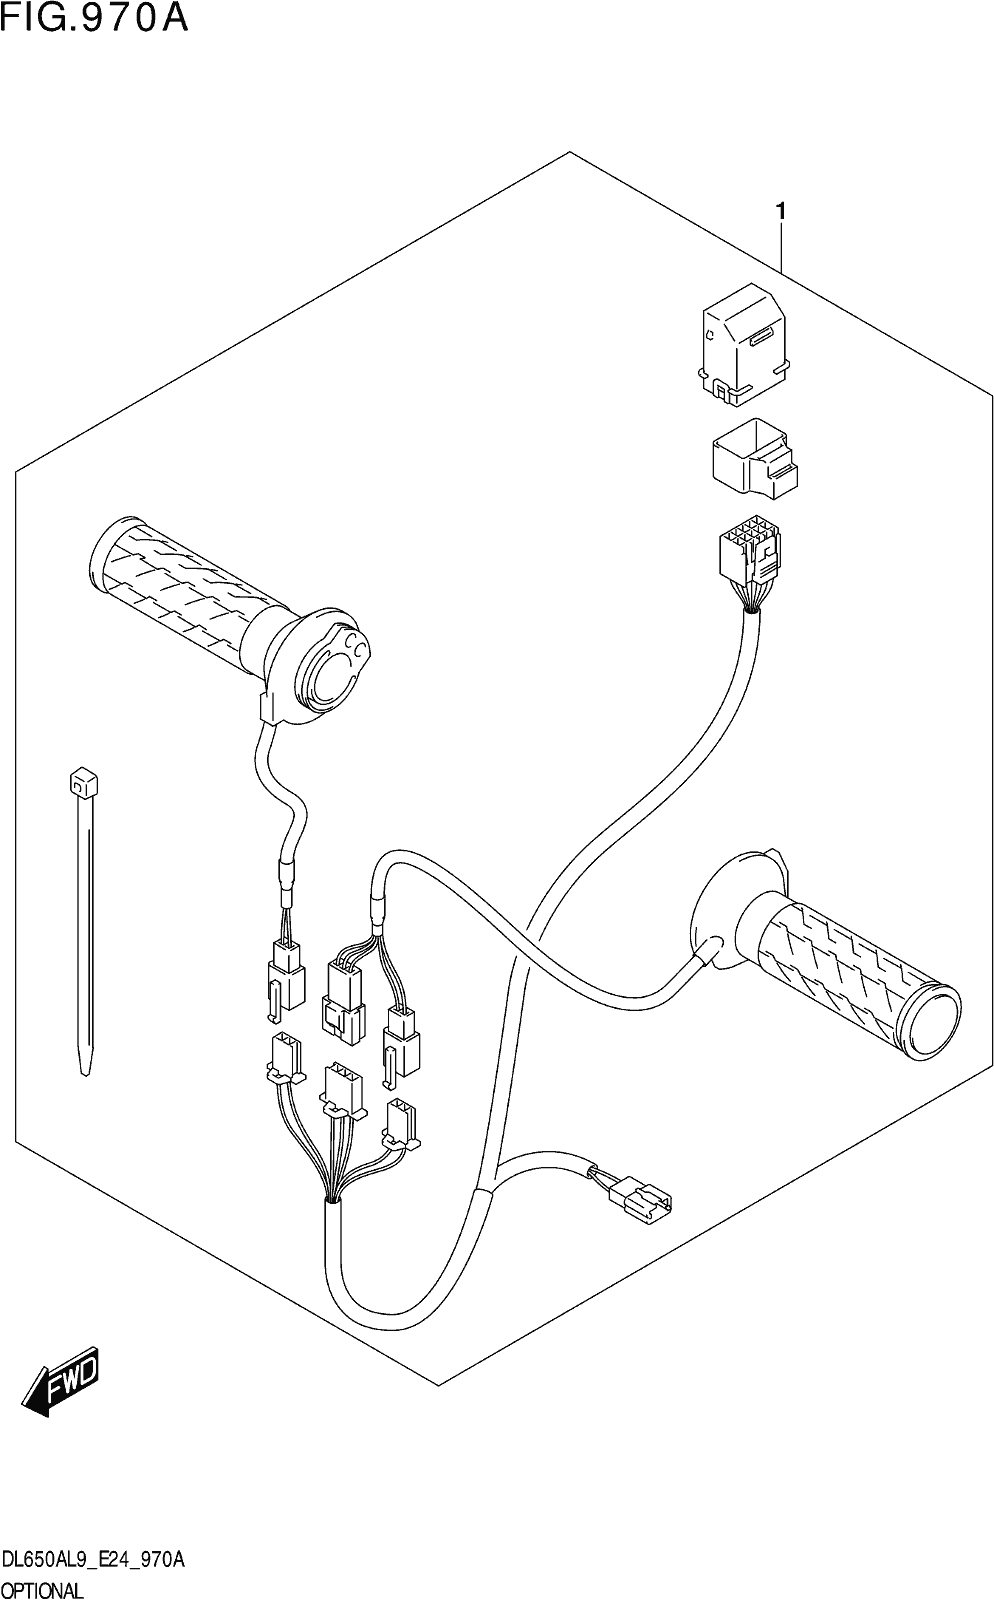 Fig.970a Optional (grip Heater Set)